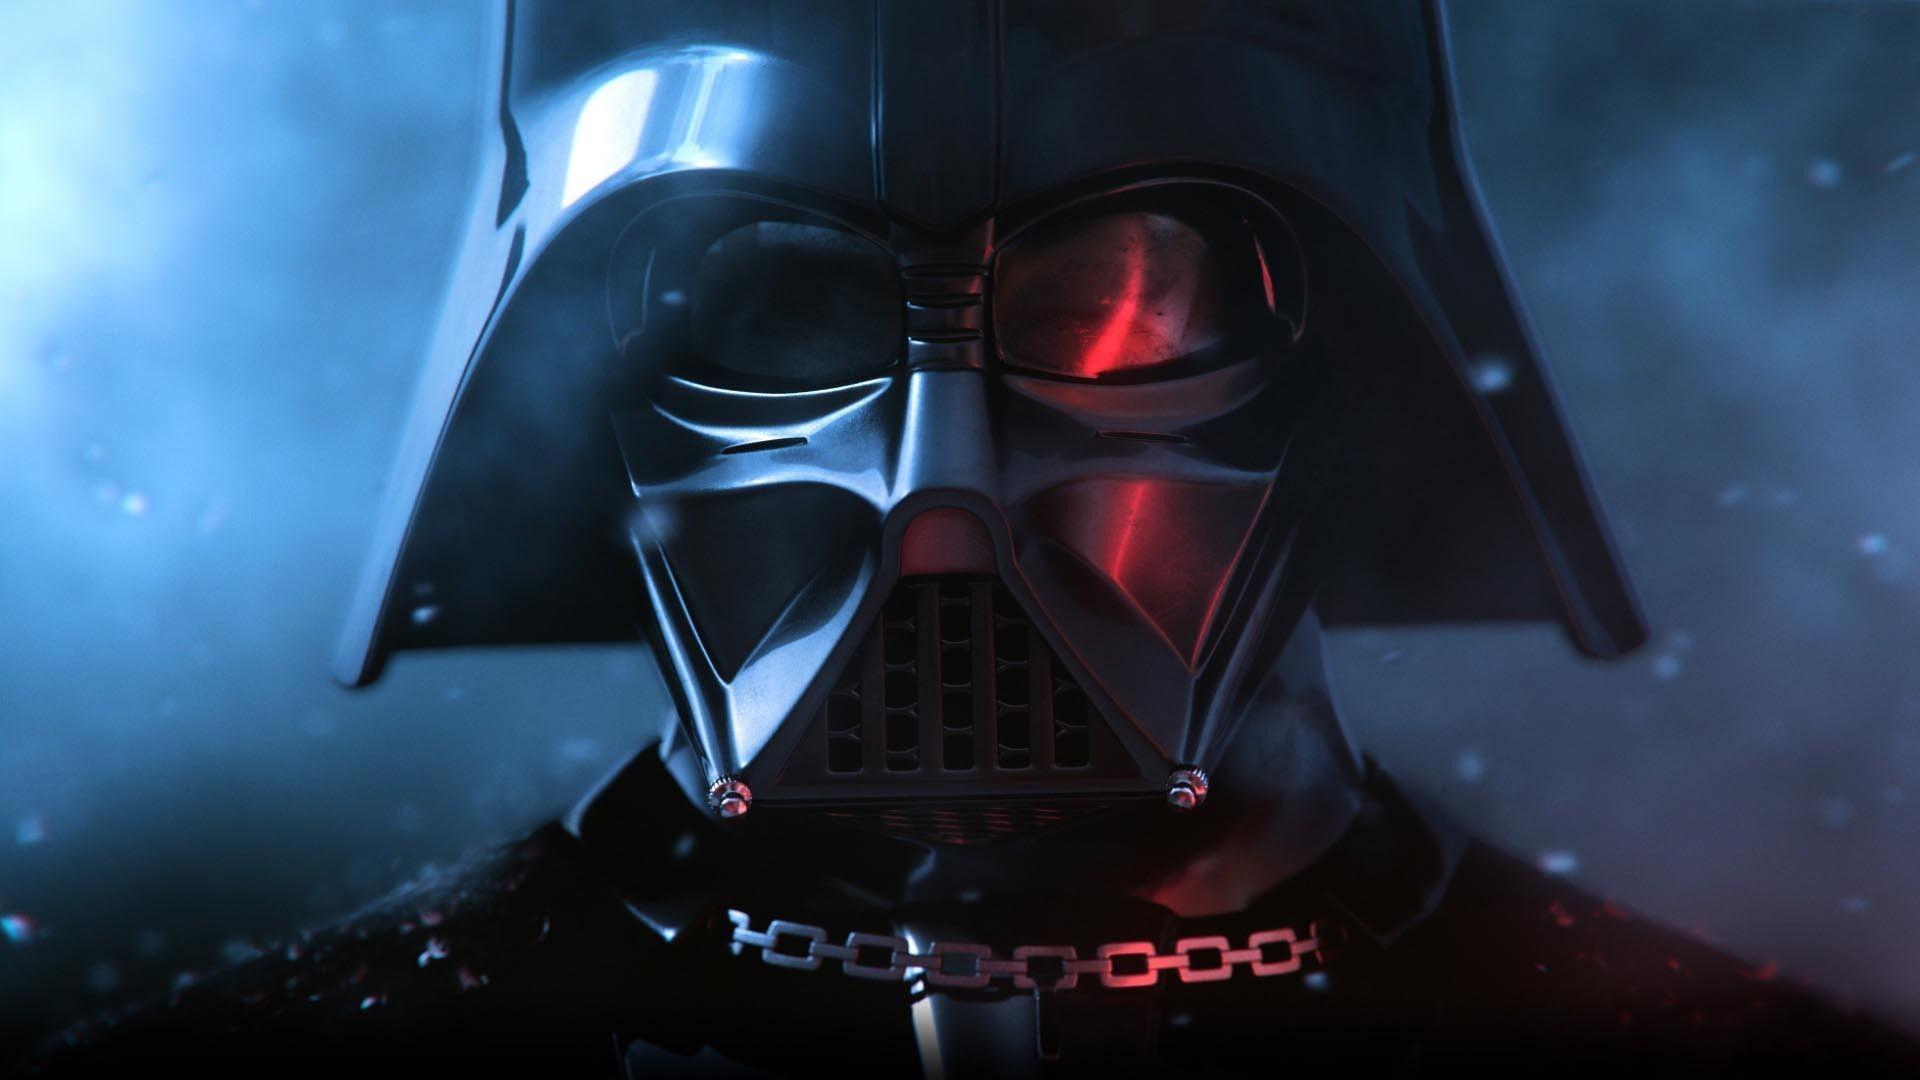 Darth Vader 4k Wallpapers - Top Những Hình Ảnh Đẹp